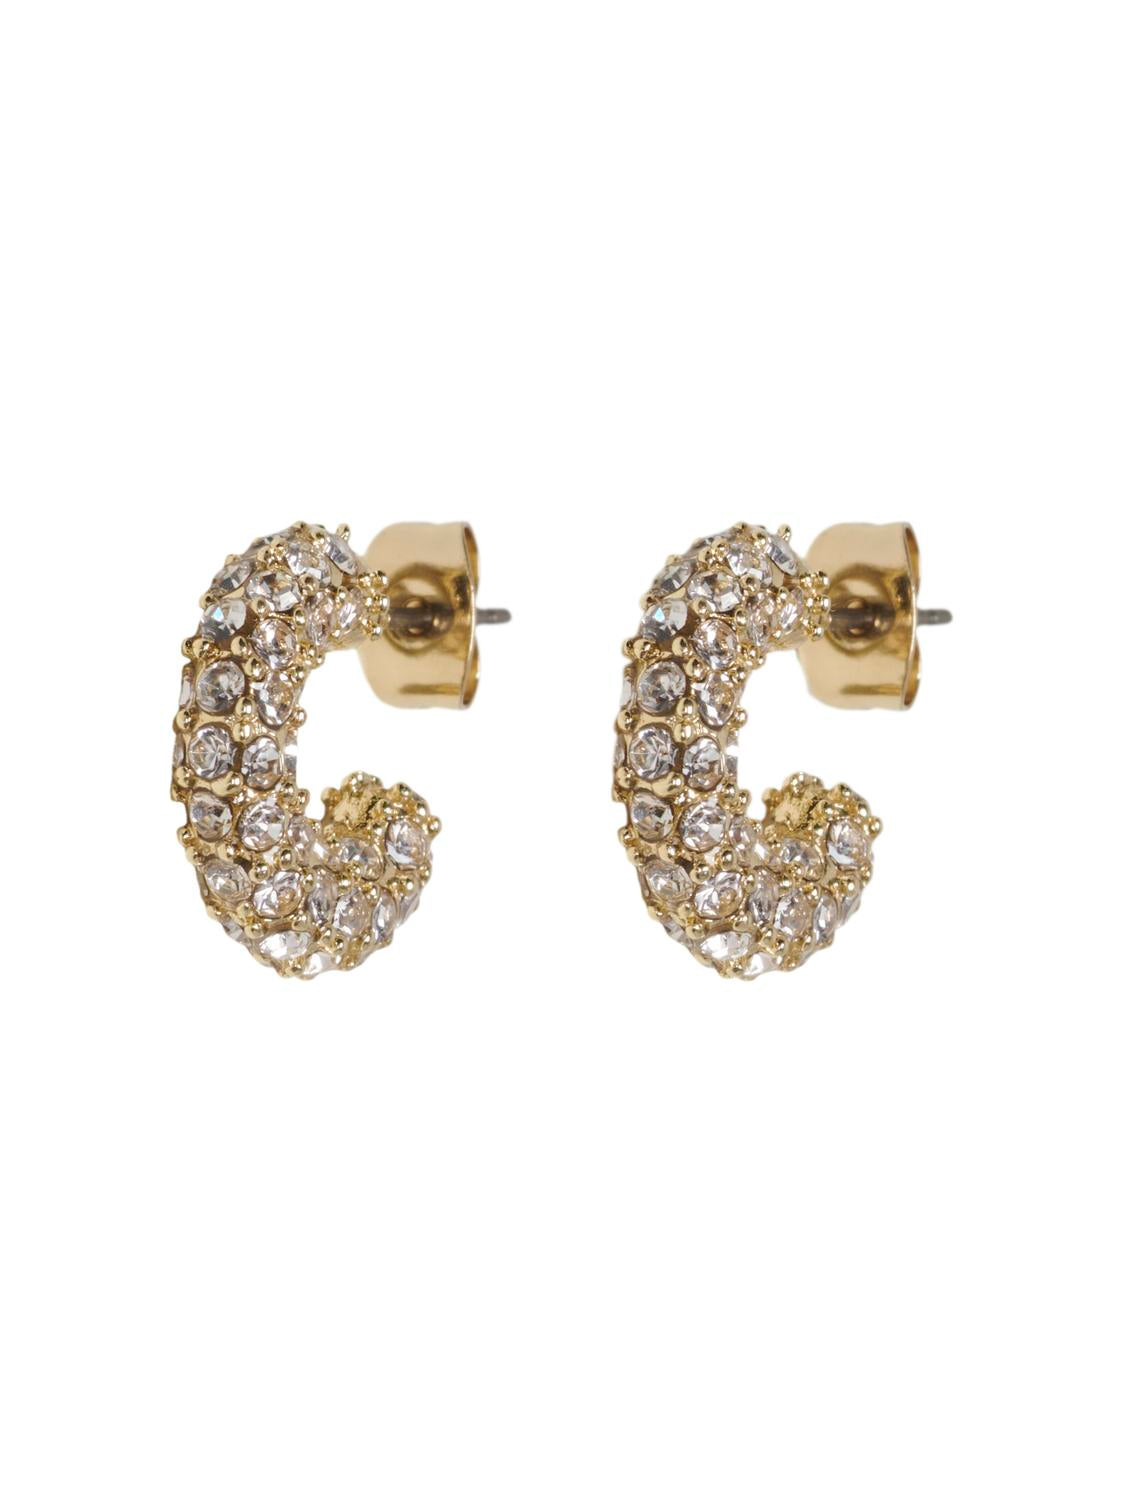 STUJOE Earrings - Gold Colour